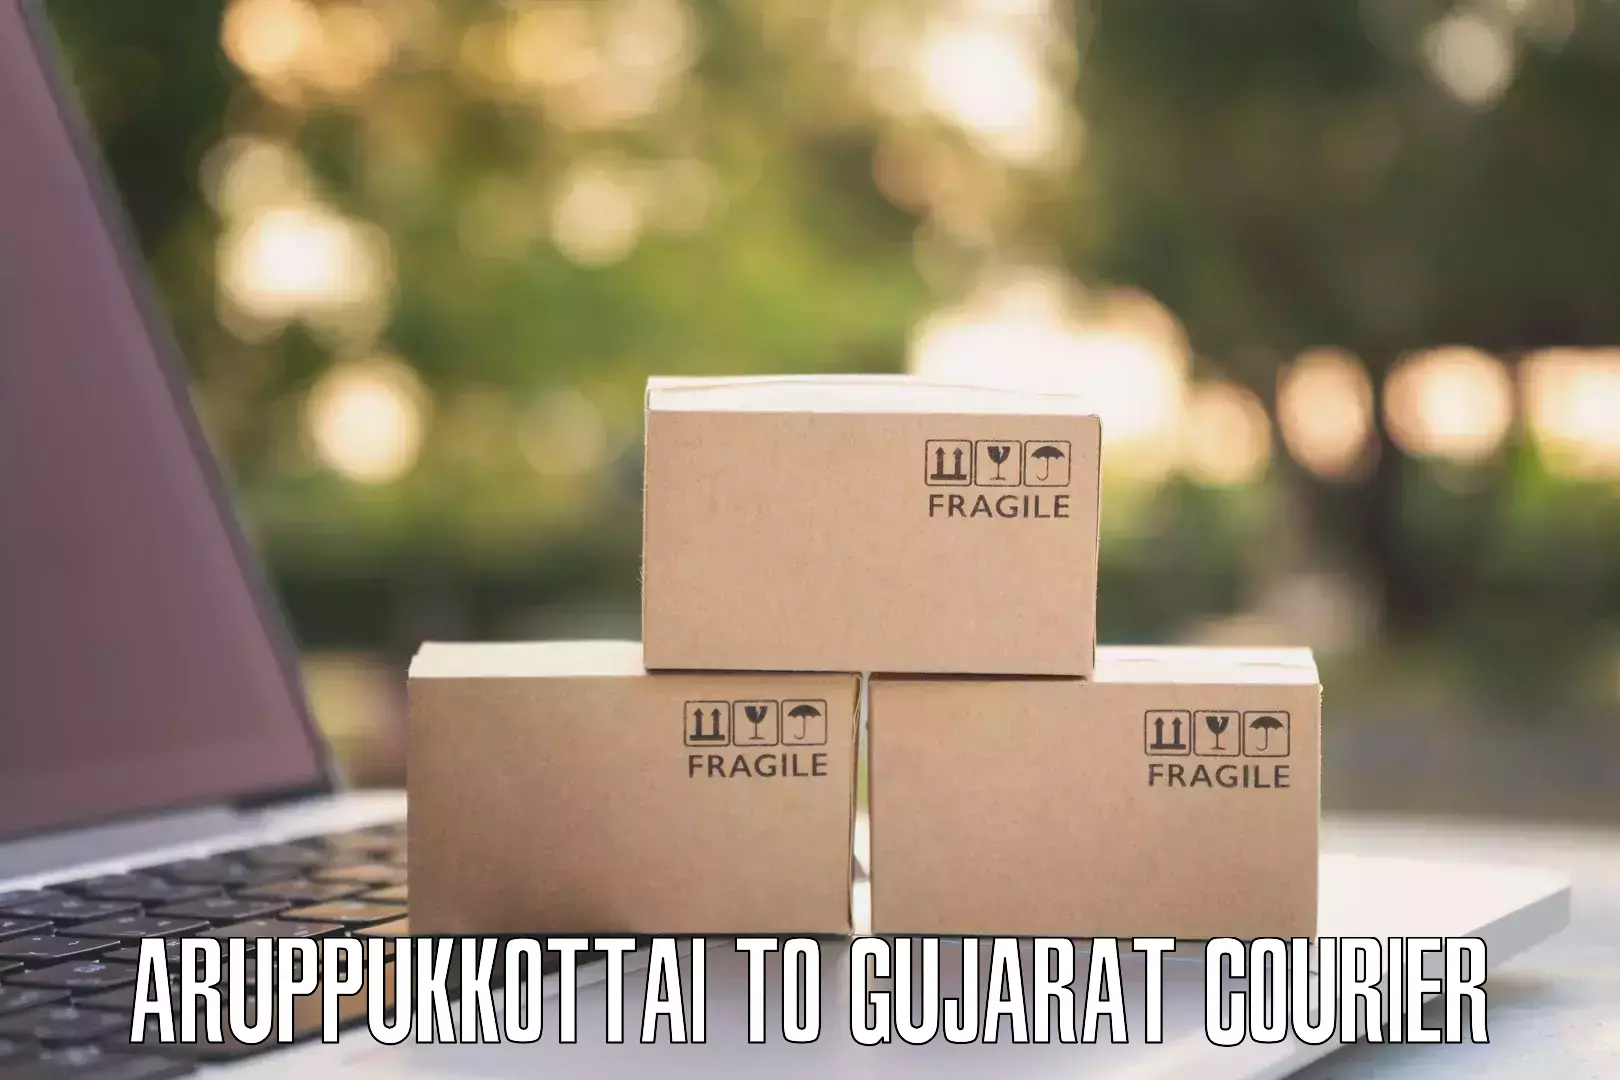 Efficient parcel service Aruppukkottai to Gujarat